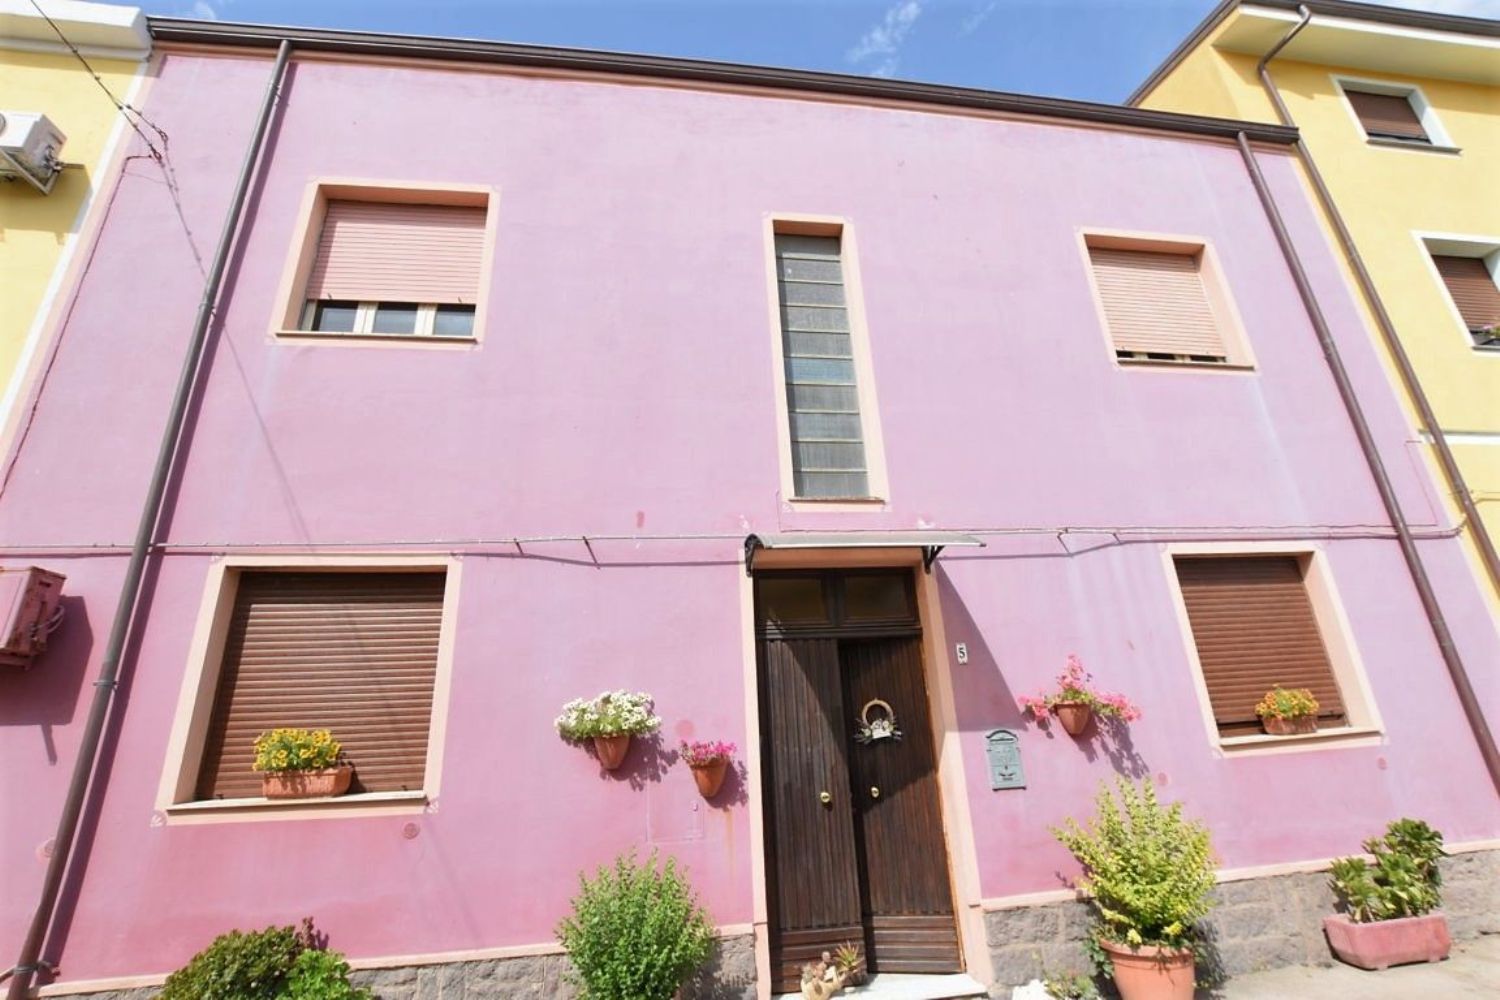 Appartamento in vendita a Thiesi, 5 locali, prezzo € 38.000 | CambioCasa.it